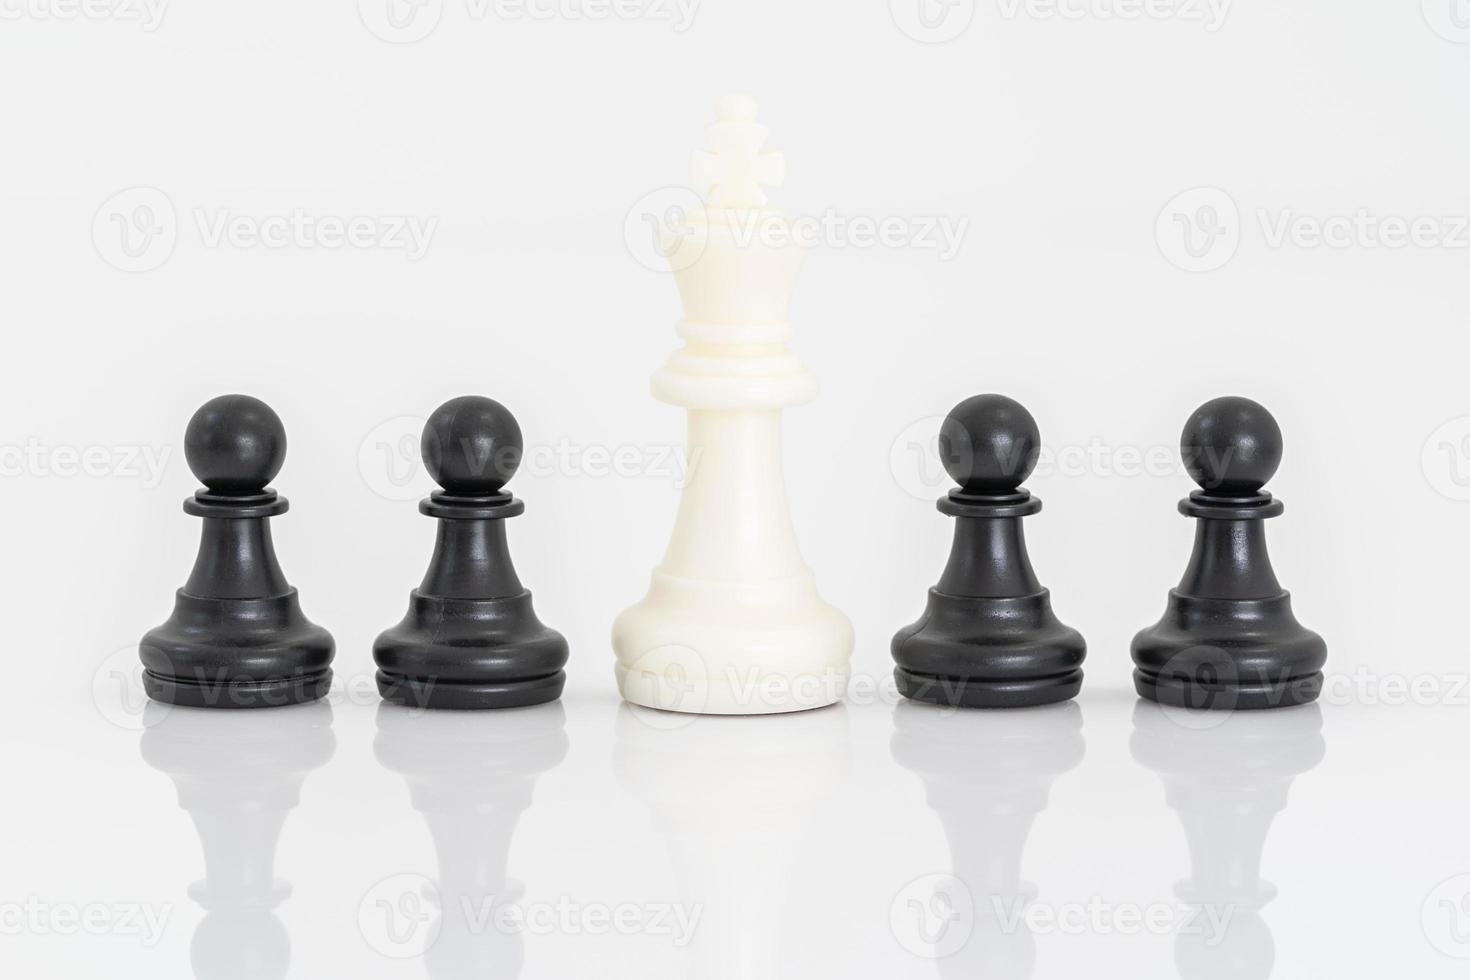 Fundo xadrez preto e branco Stock Photo